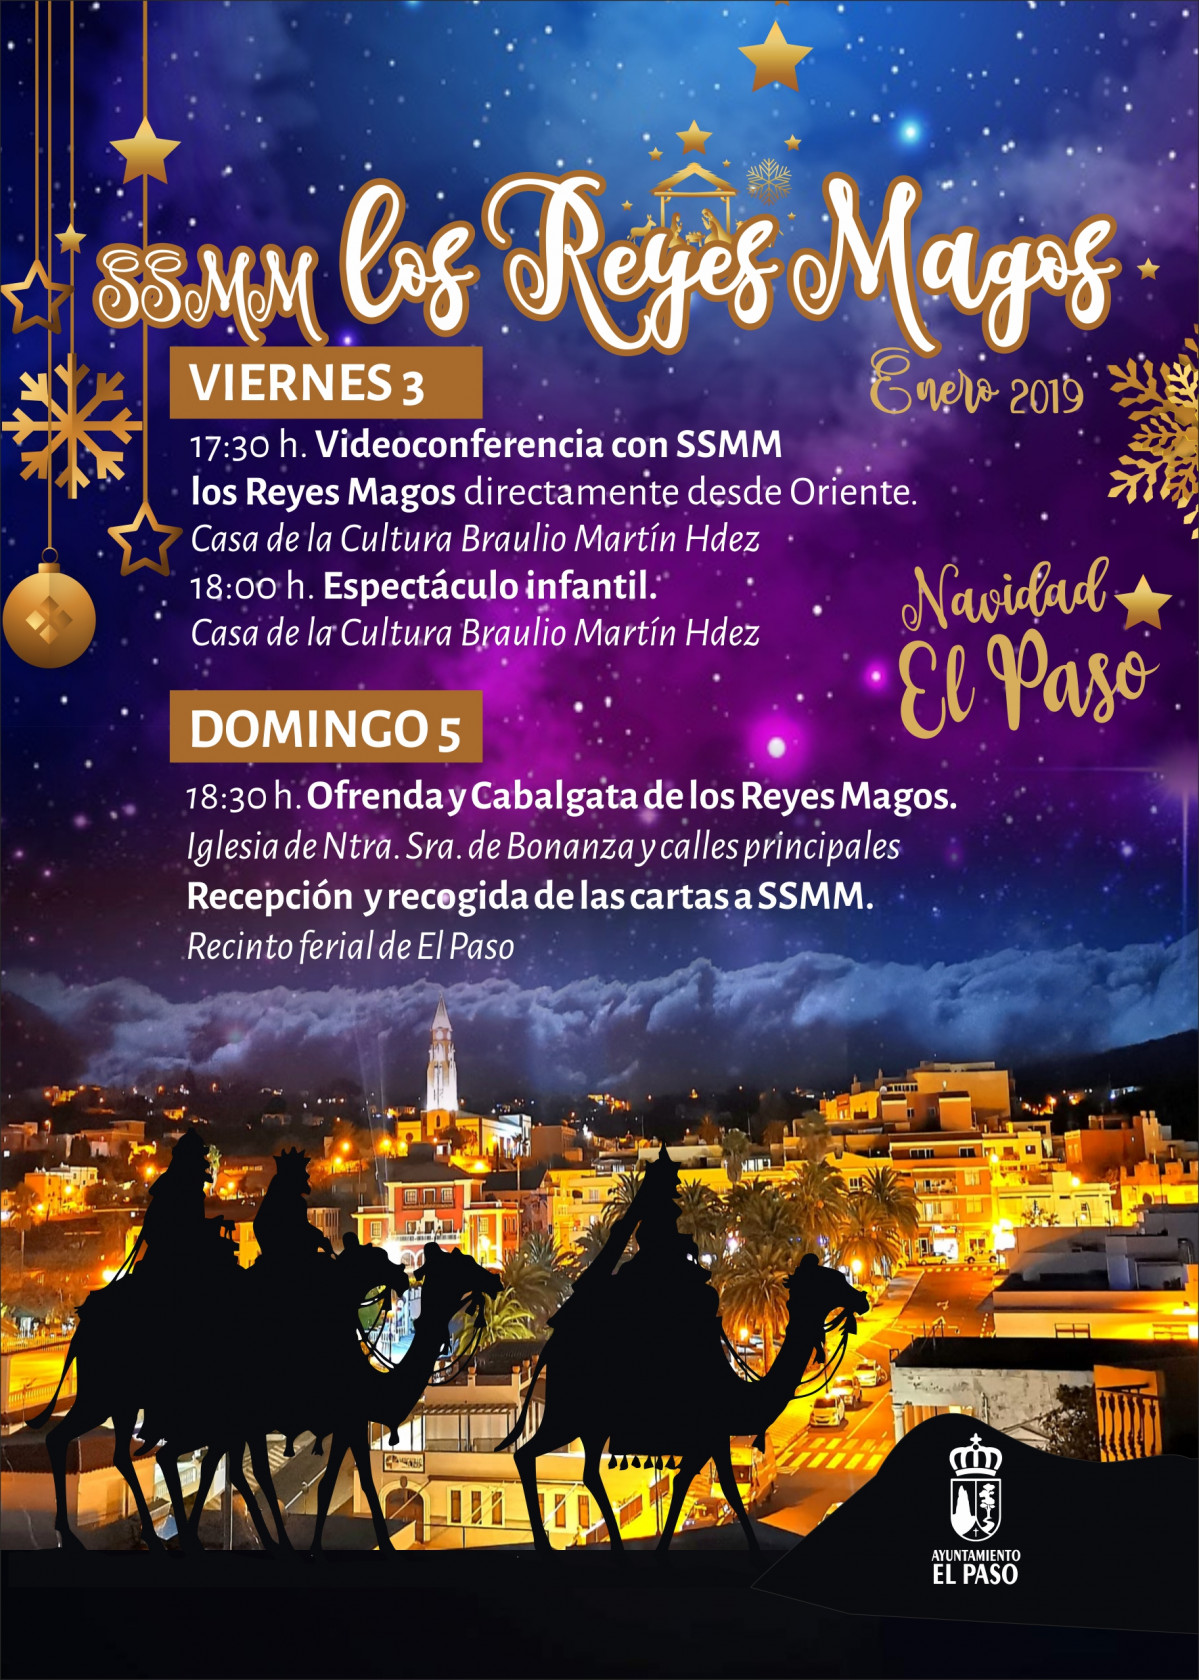 Imagen programa de actos Reyes Magos 2020